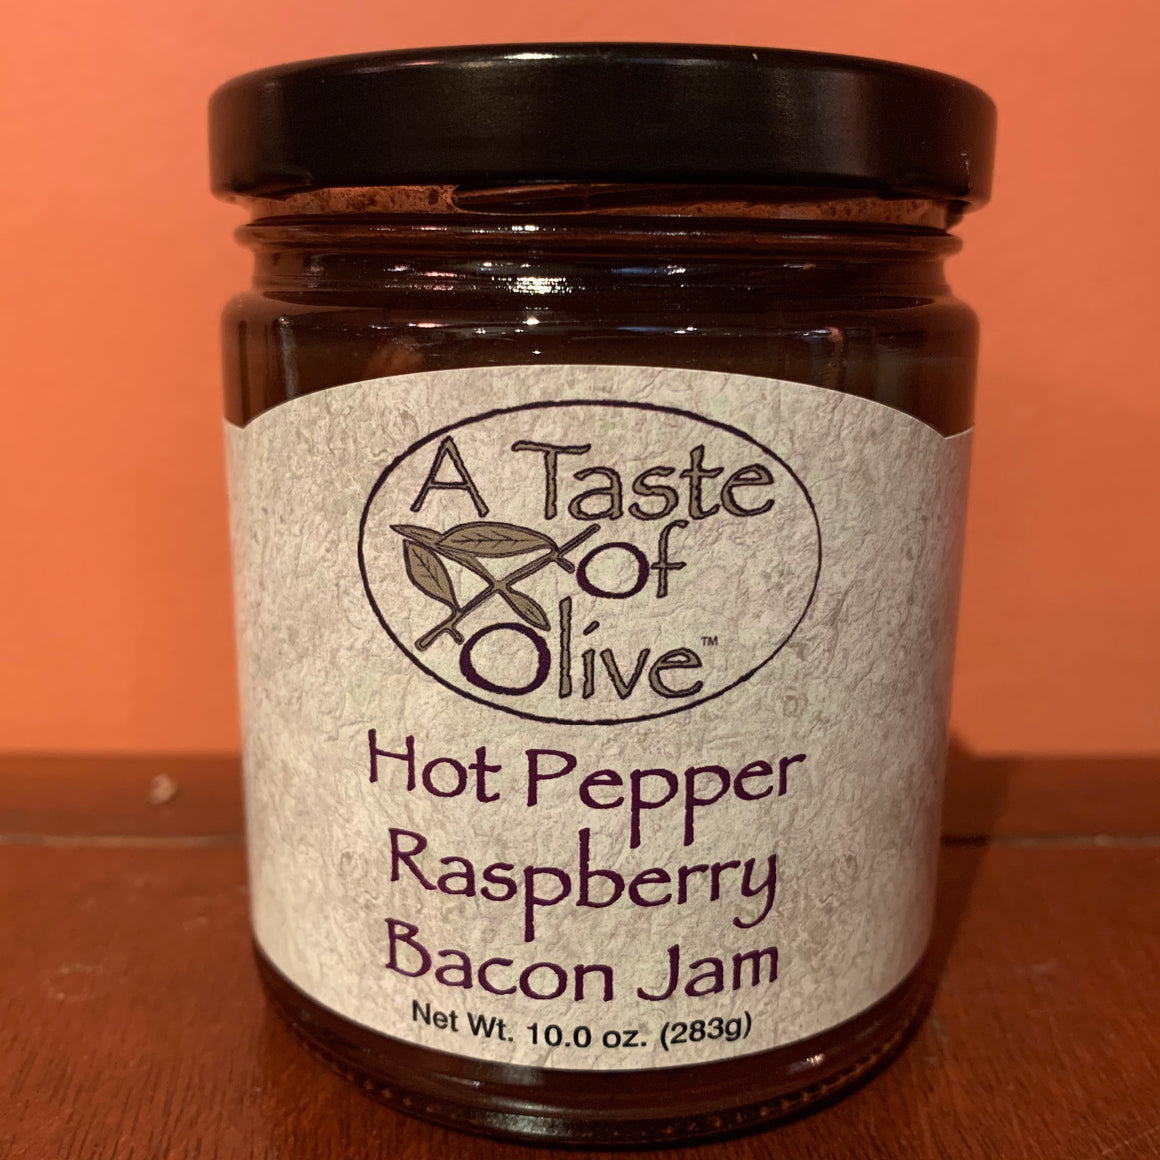 Hot Pepper Raspberry Bacon Jam - A Taste of Olive